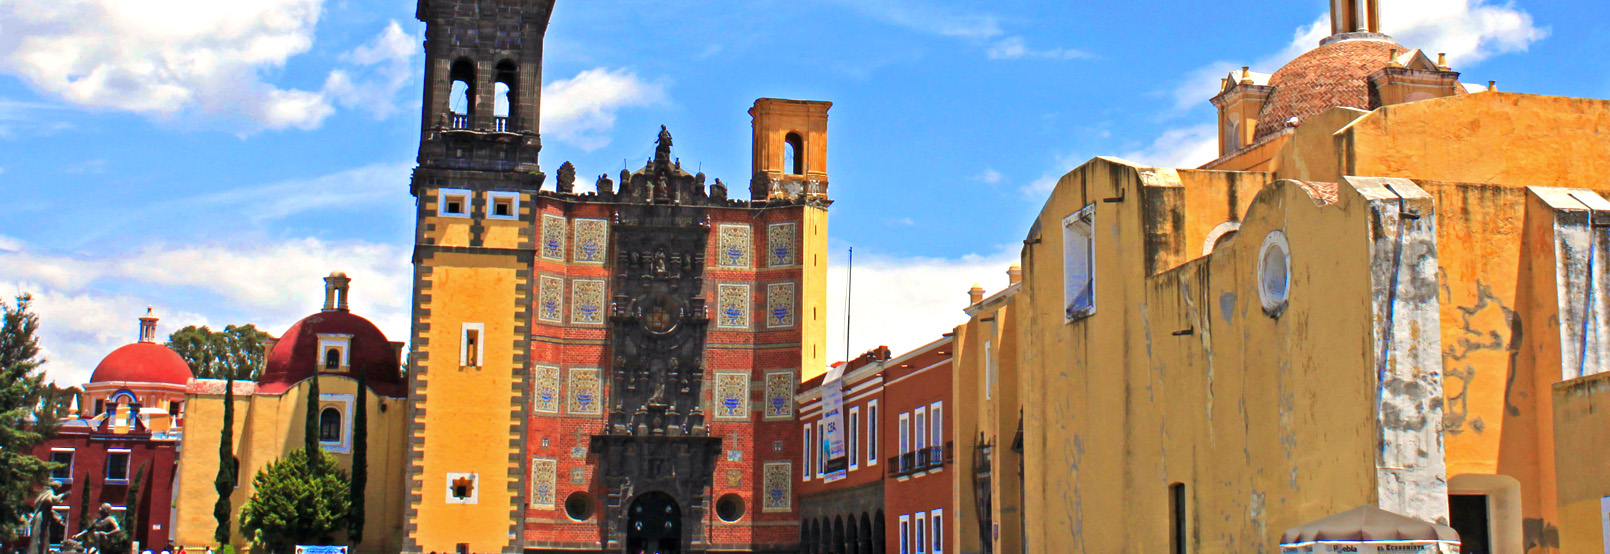 arquitectura colonial de Puebla